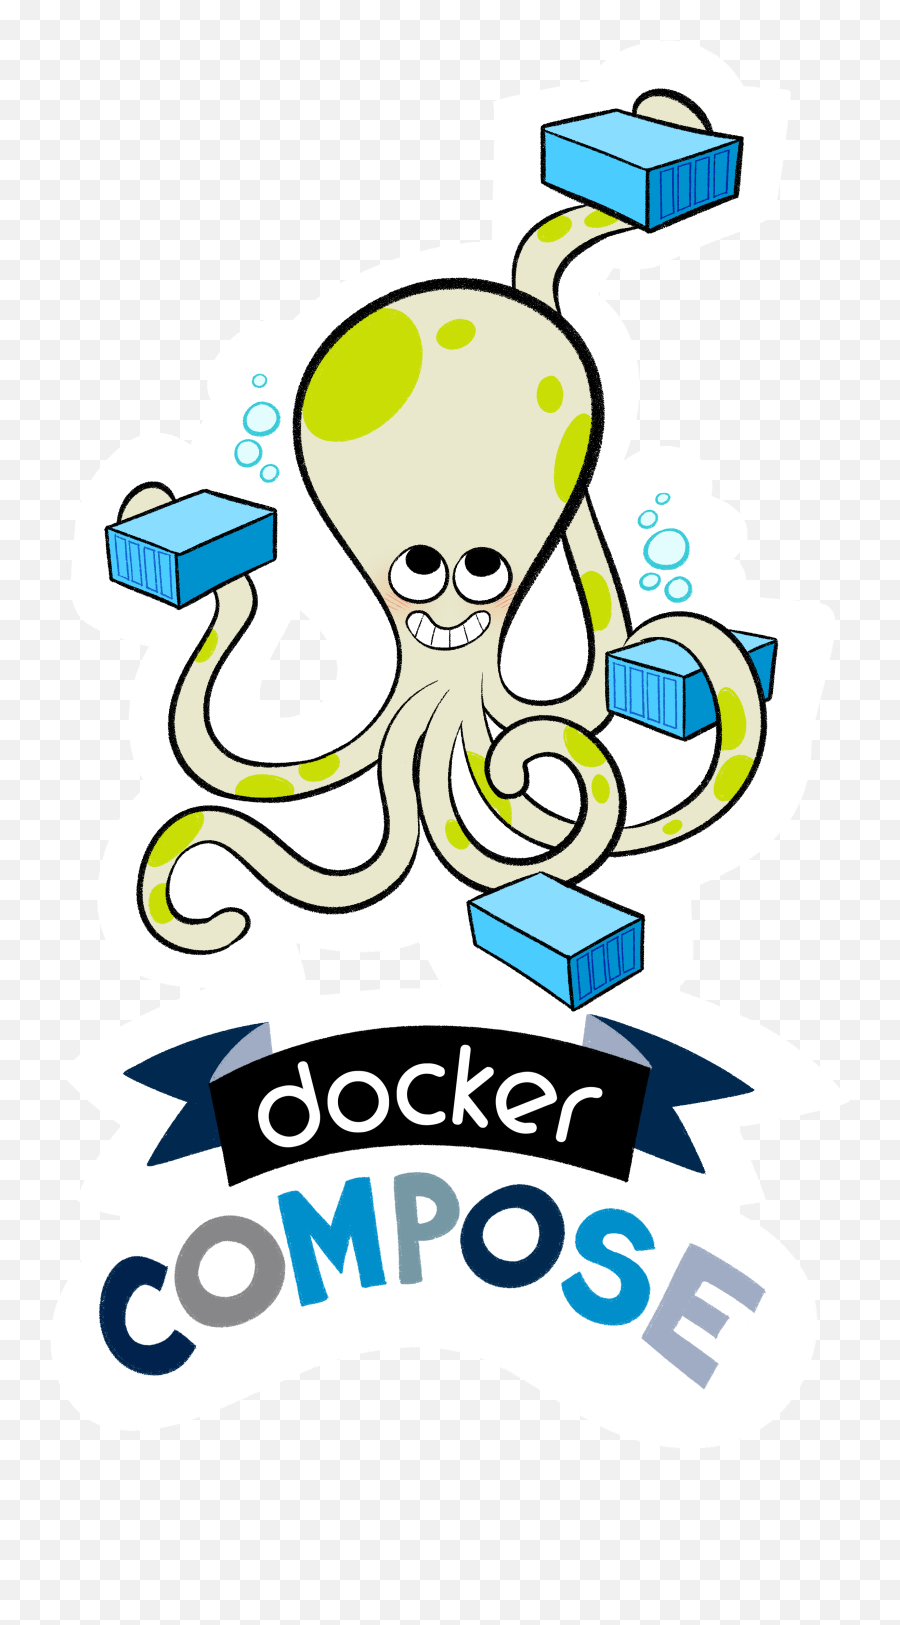 Docker Compose V1 - Docker Swarm Png,Compose Icon